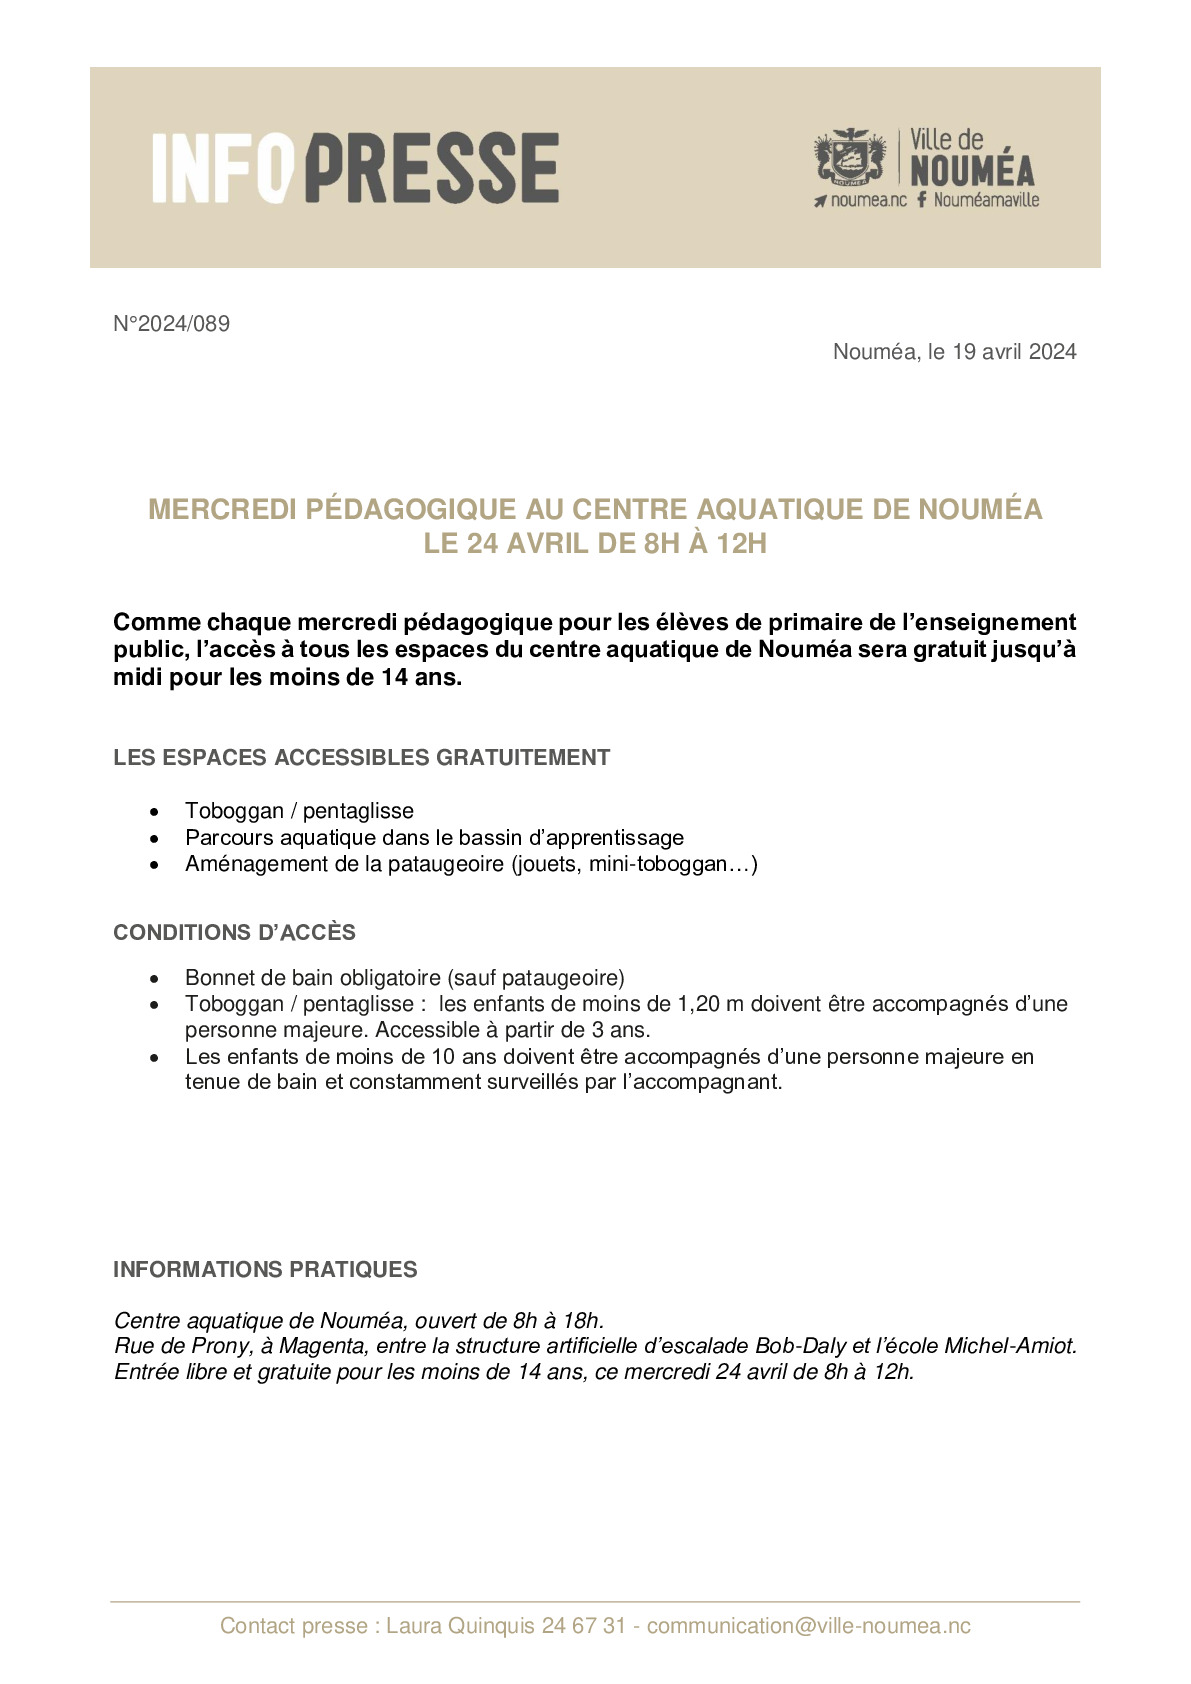 089 IP Mercredi pedagogique CAN 24-04.pdf